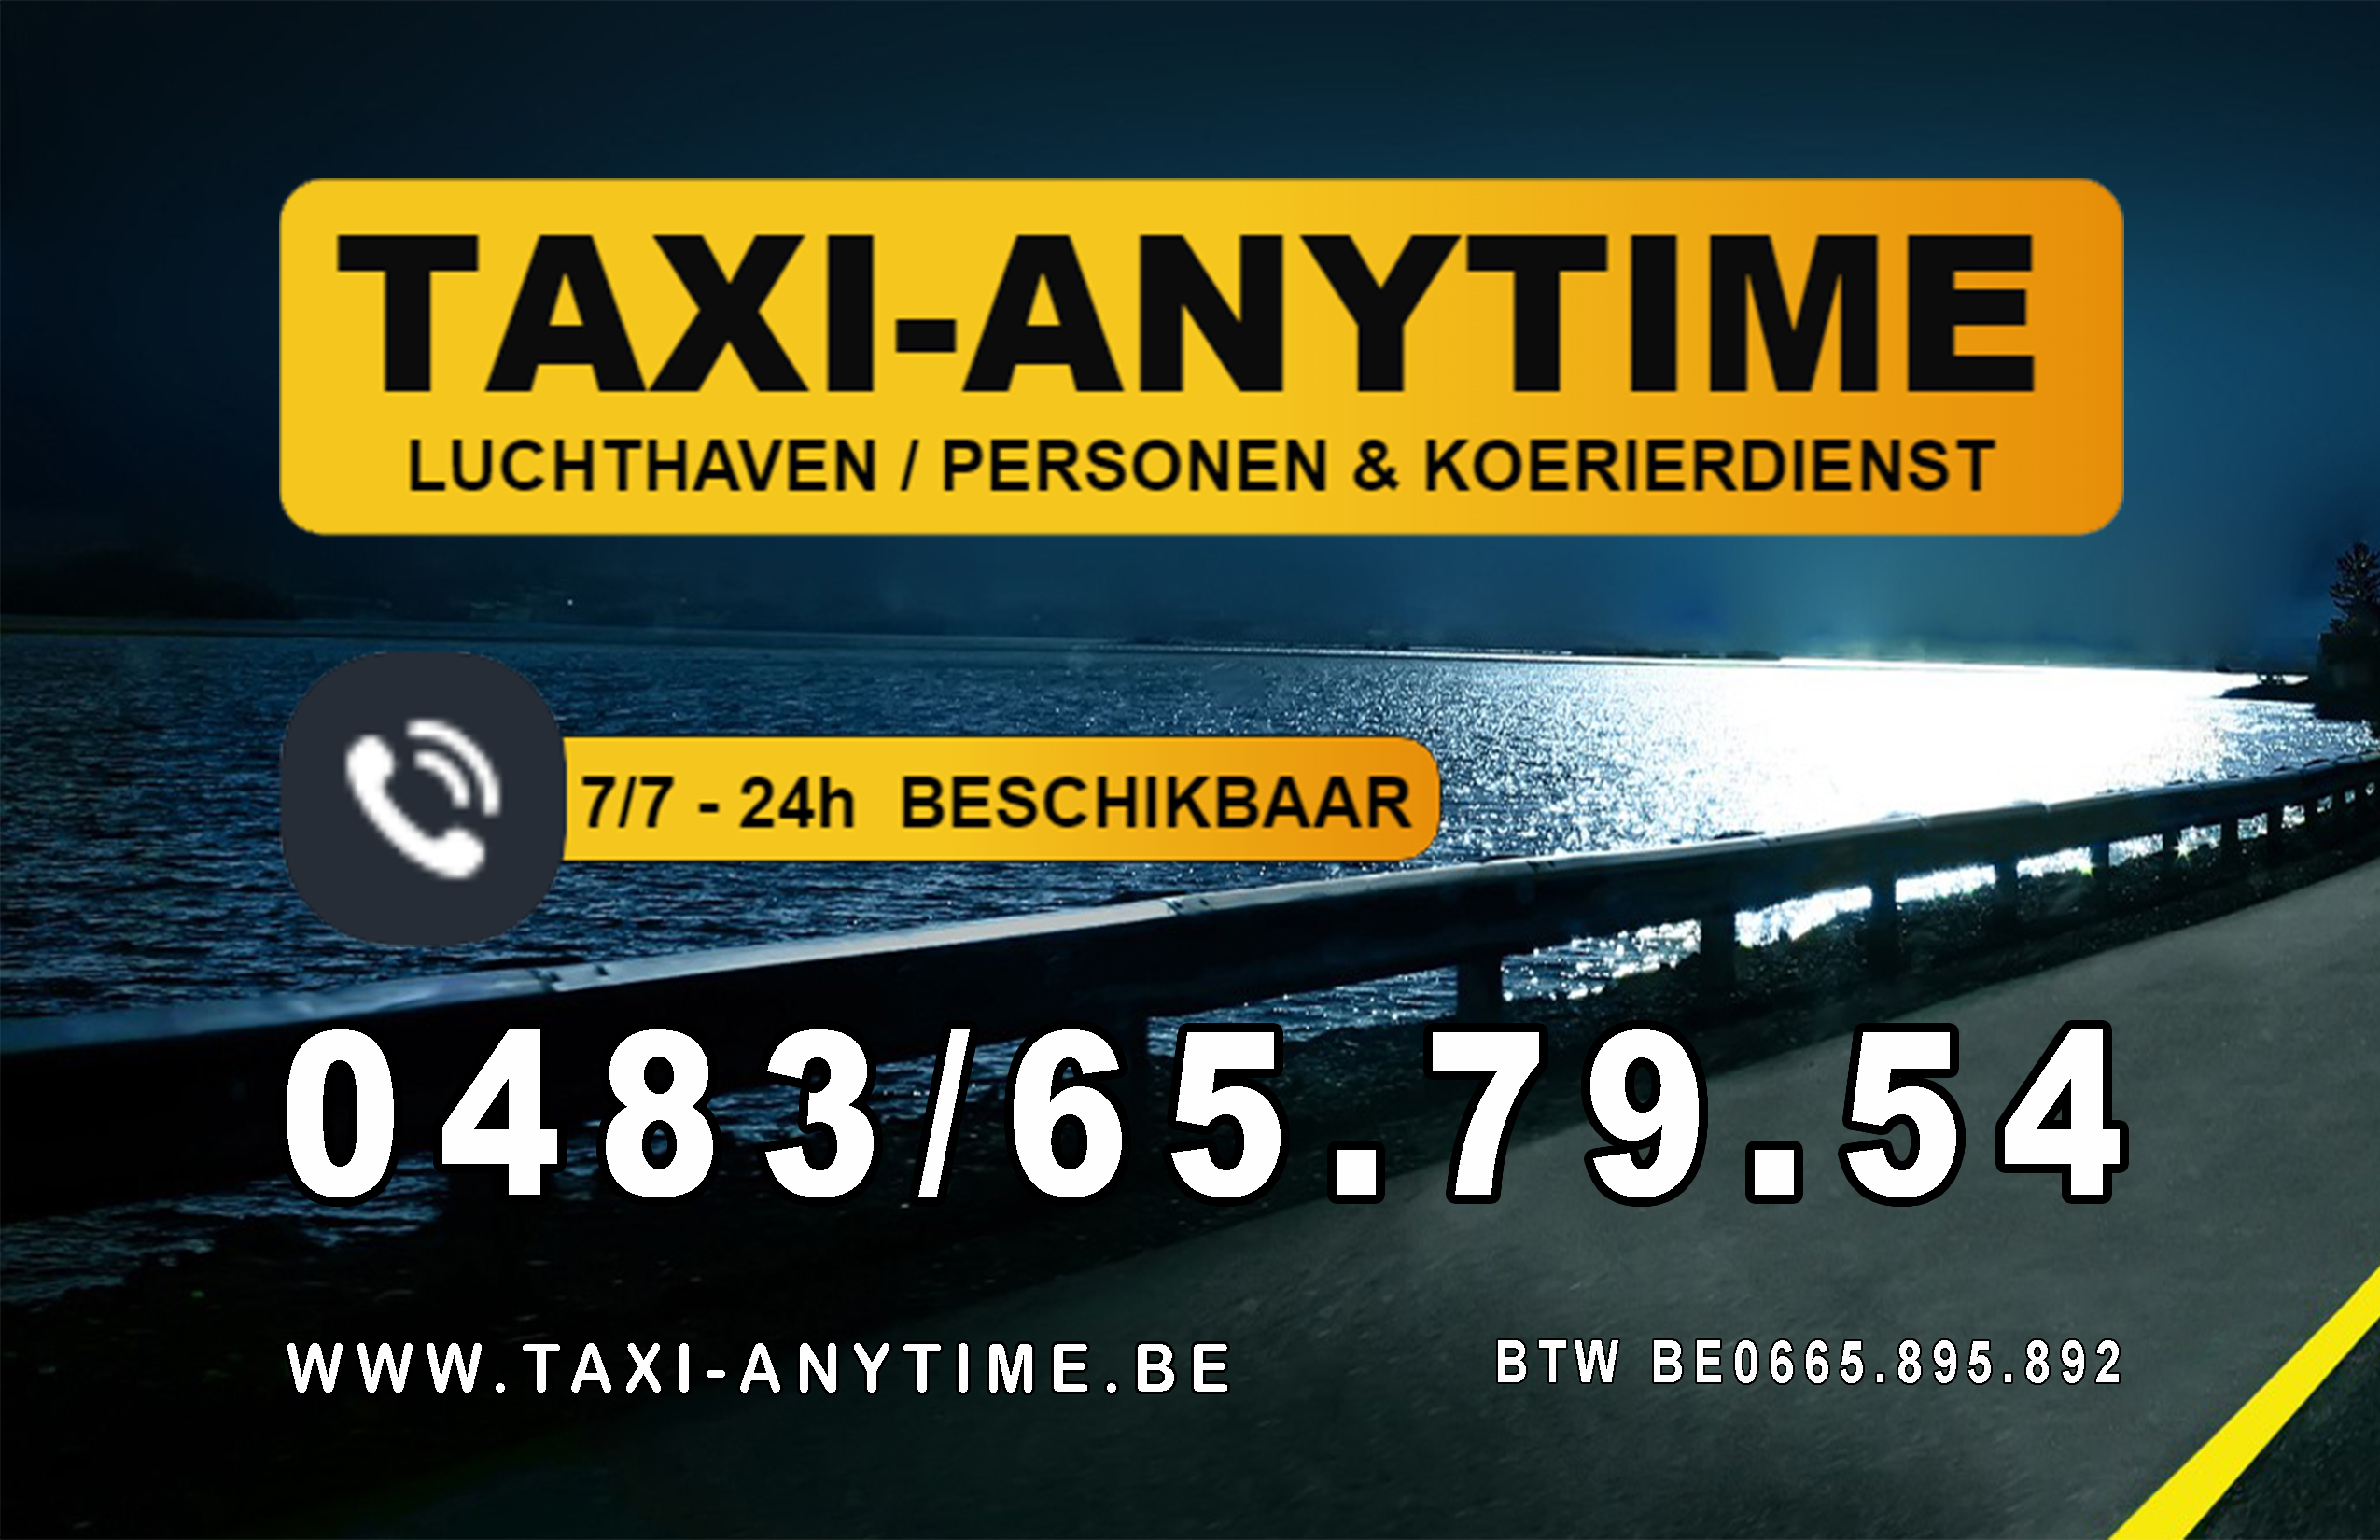 taxibedrijven met luchthavenvervoer Deurne Taxi-anytime